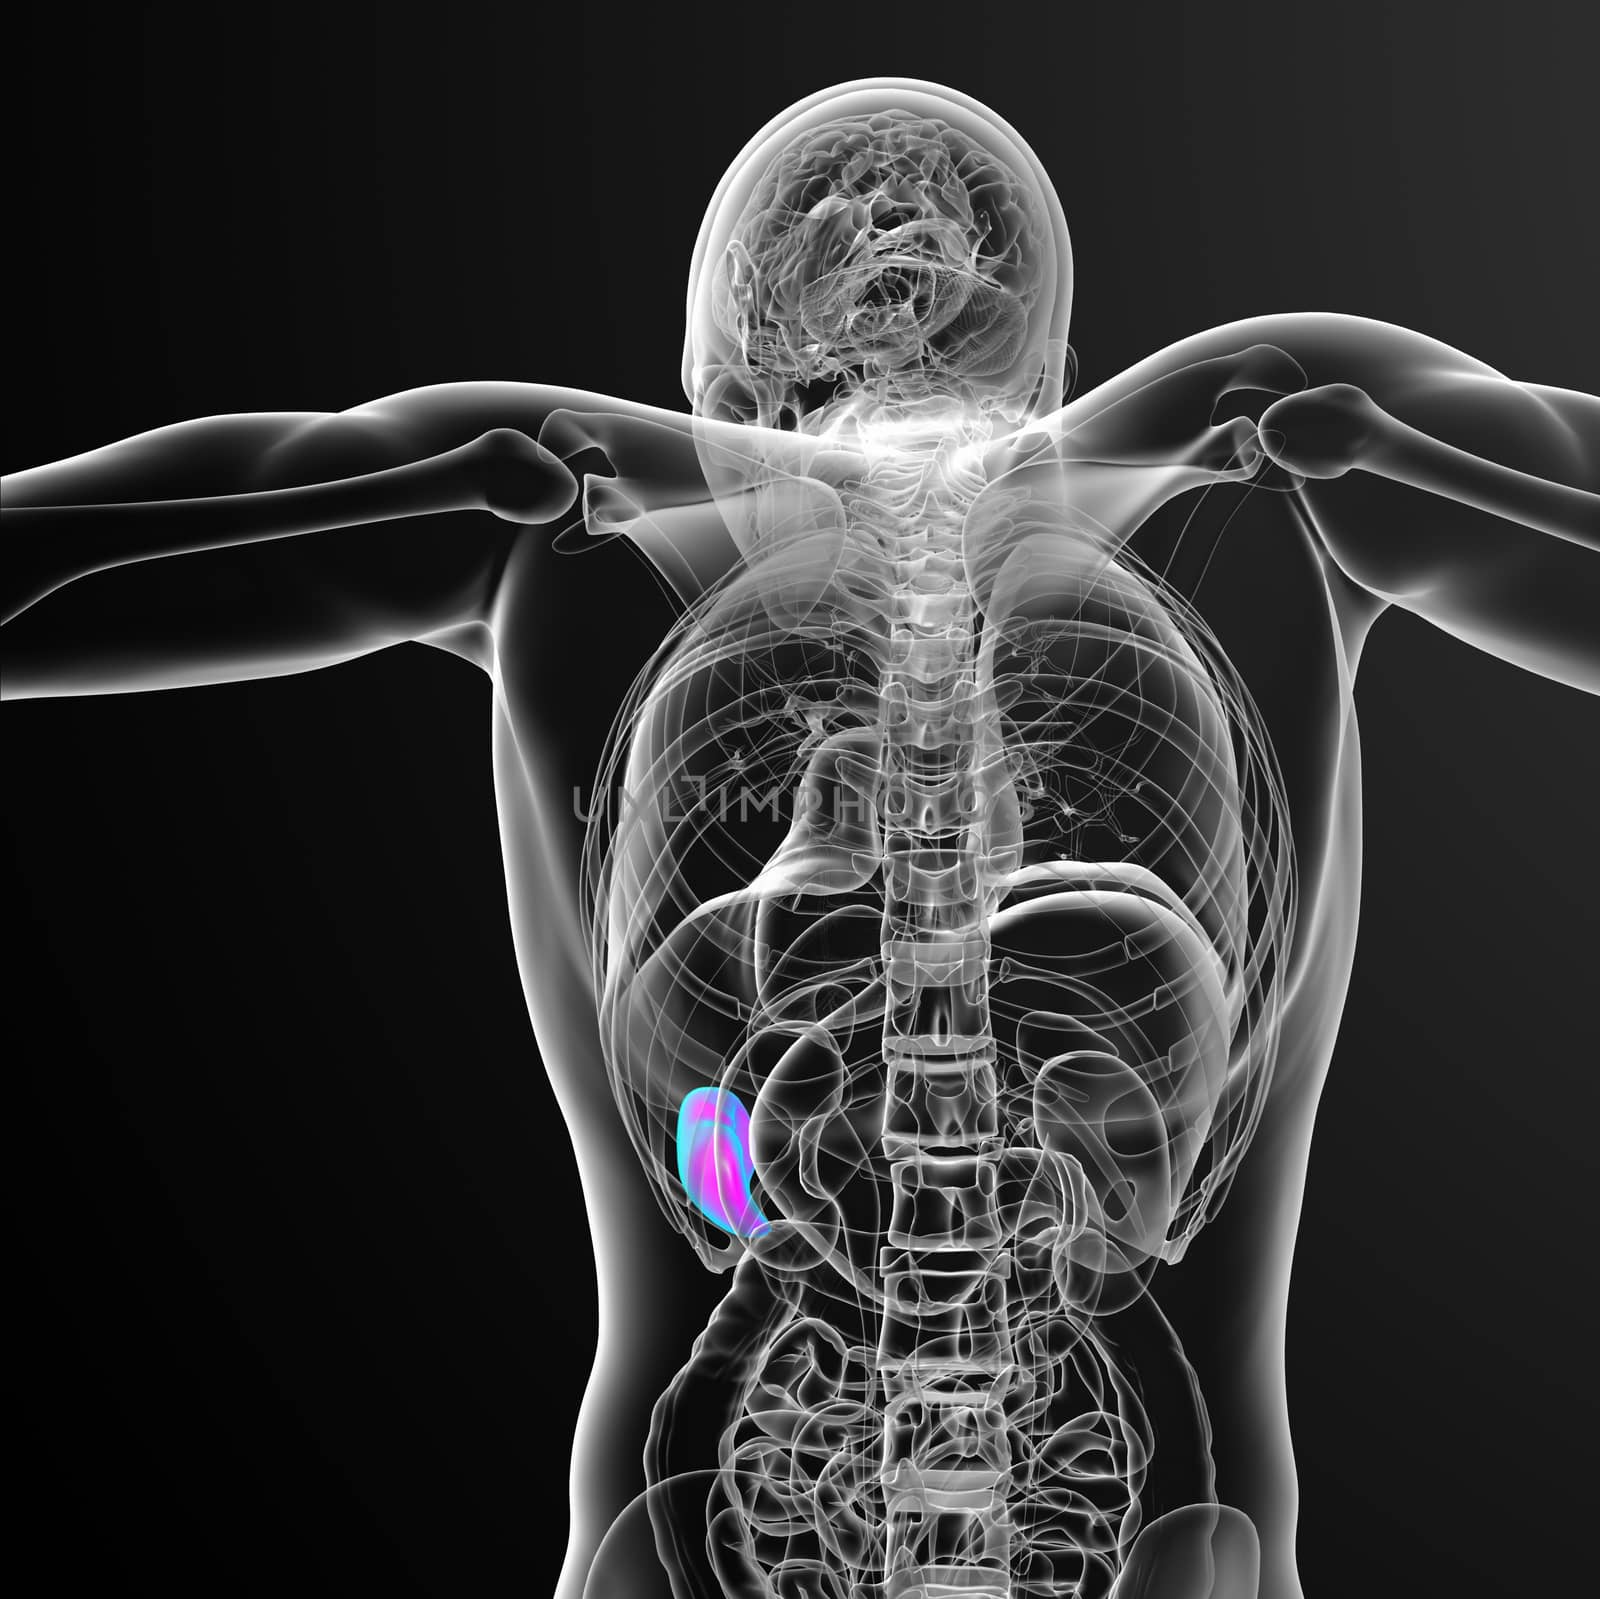 3d render medical illustration of the spleen - back view